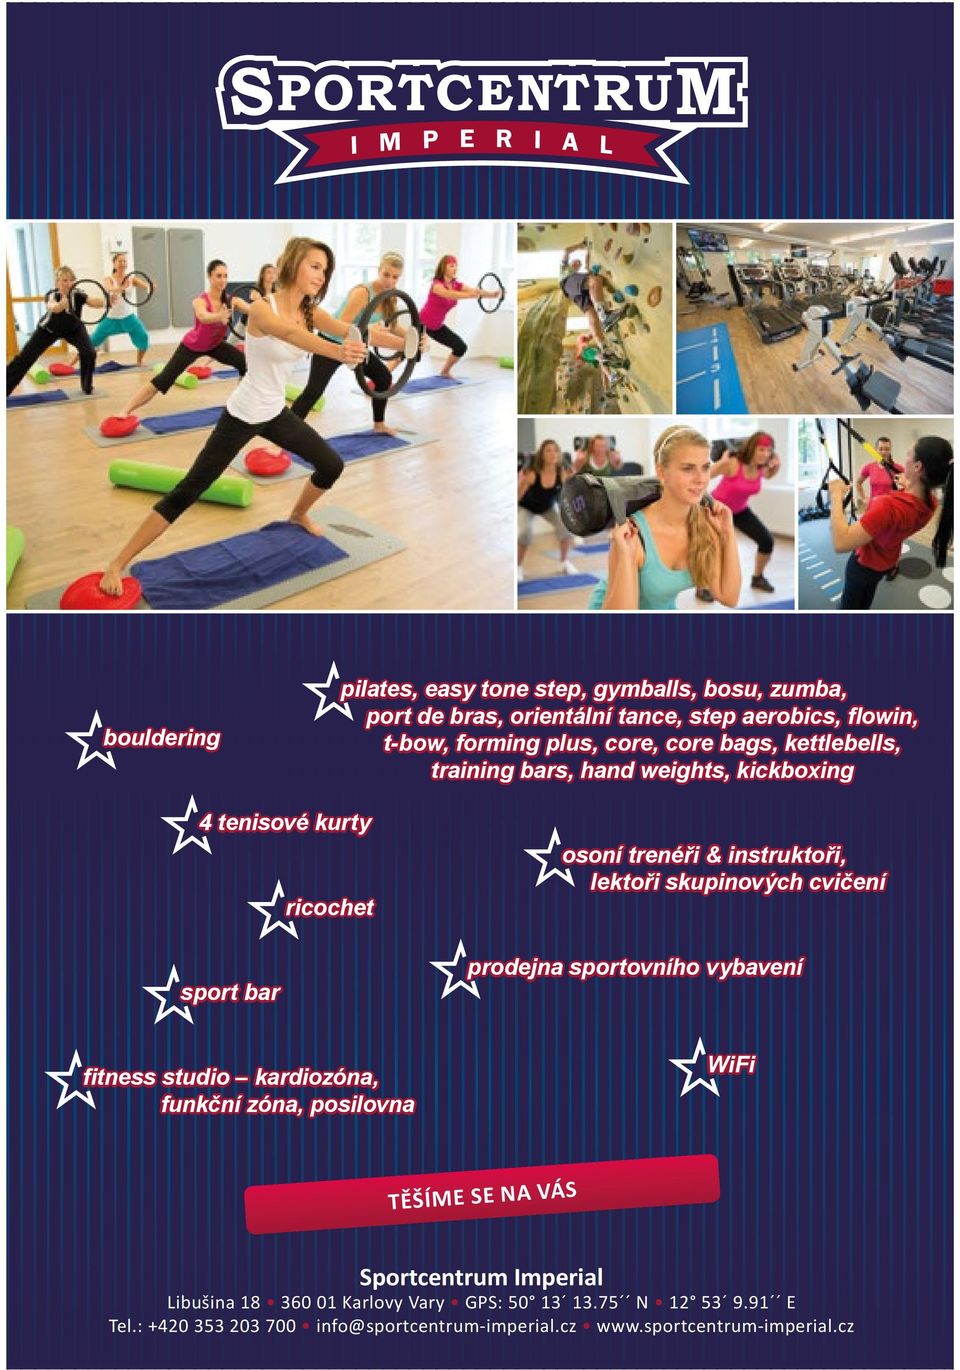 skupinových cvičení prodejna sportovního vybavení fitness studio kardiozóna, funkční zóna, posilovna WiFi TĚŠÍME SE NA VÁS Sportcentrum